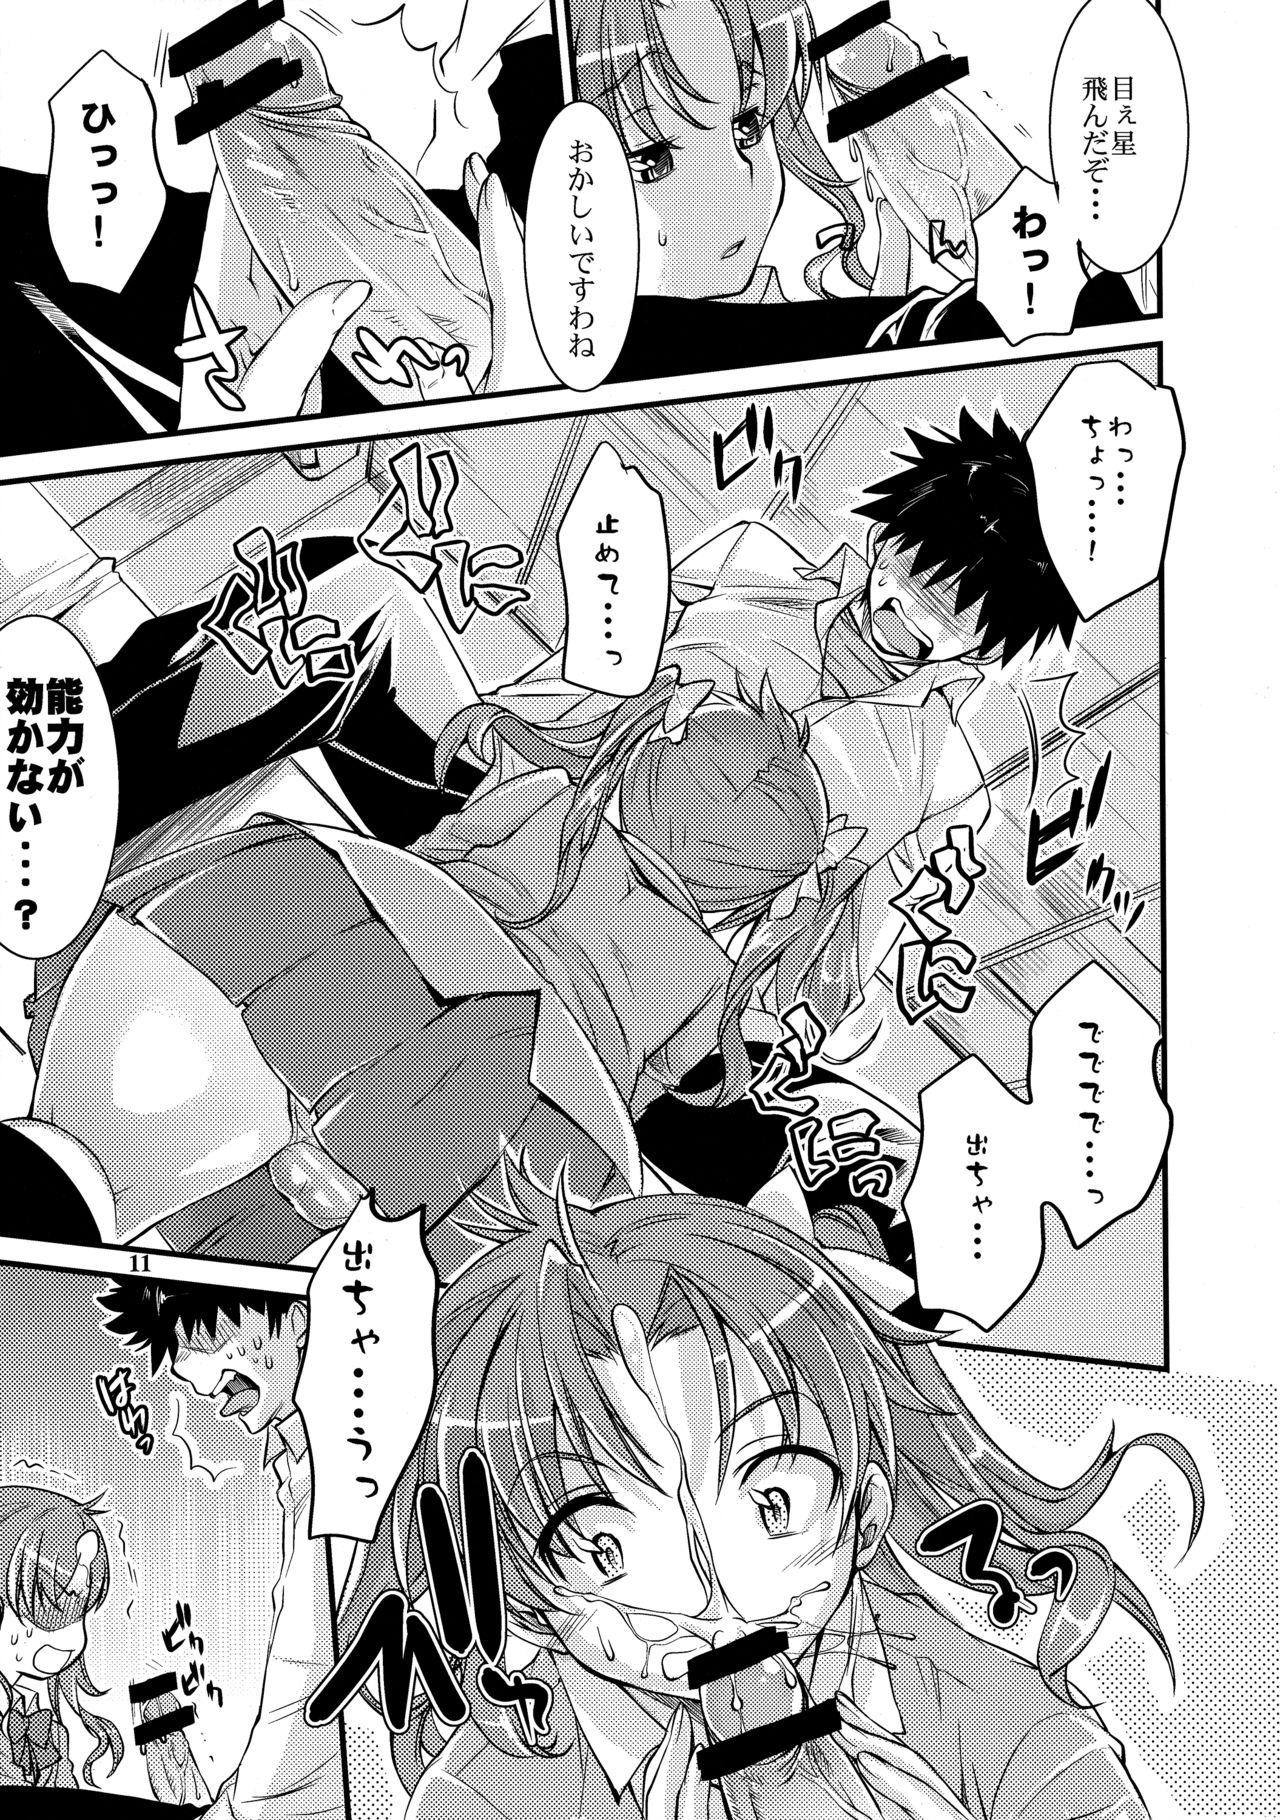 Messy Toaru Kagaku no Judgement 4 - Toaru kagaku no railgun Masseur - Page 10